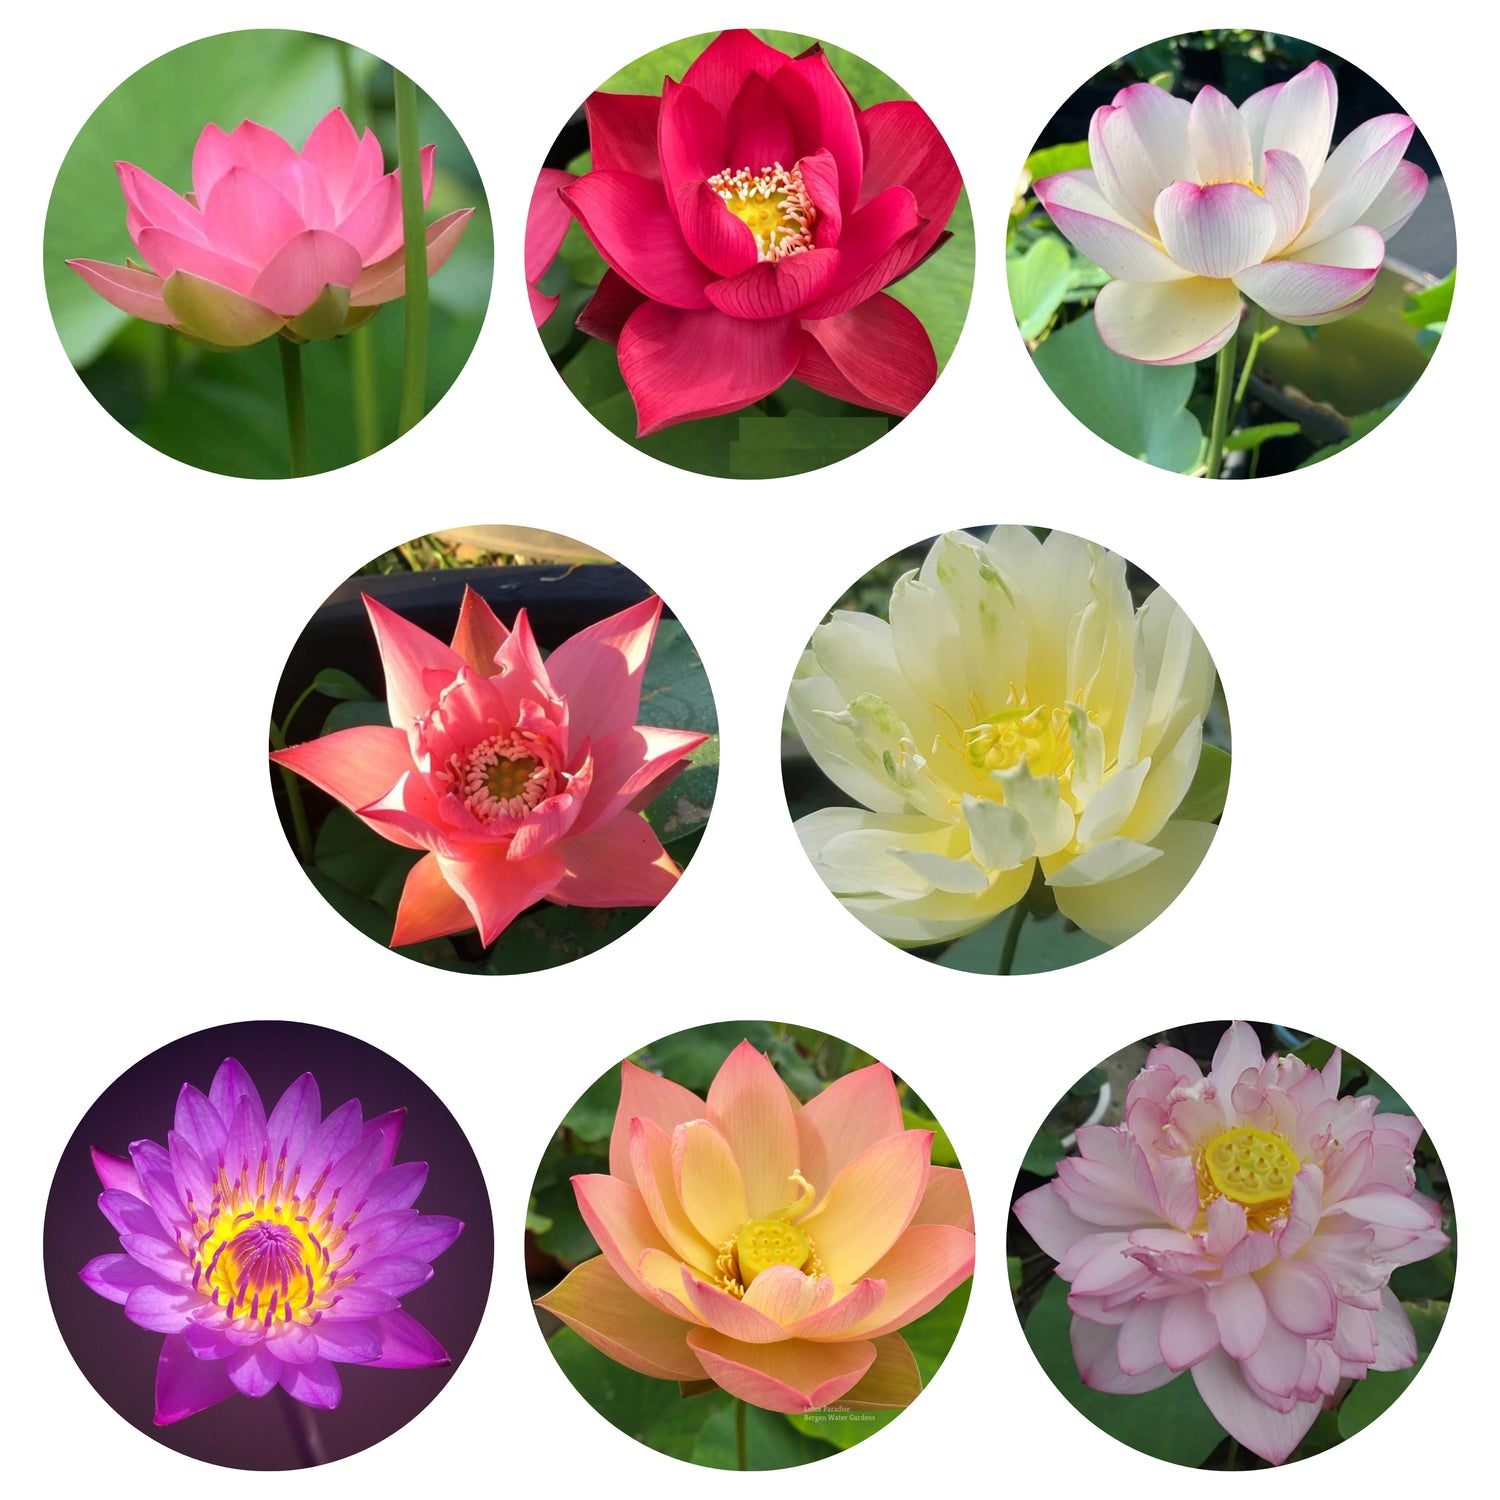 Lotus Tuber - 8 Assorted Varieties